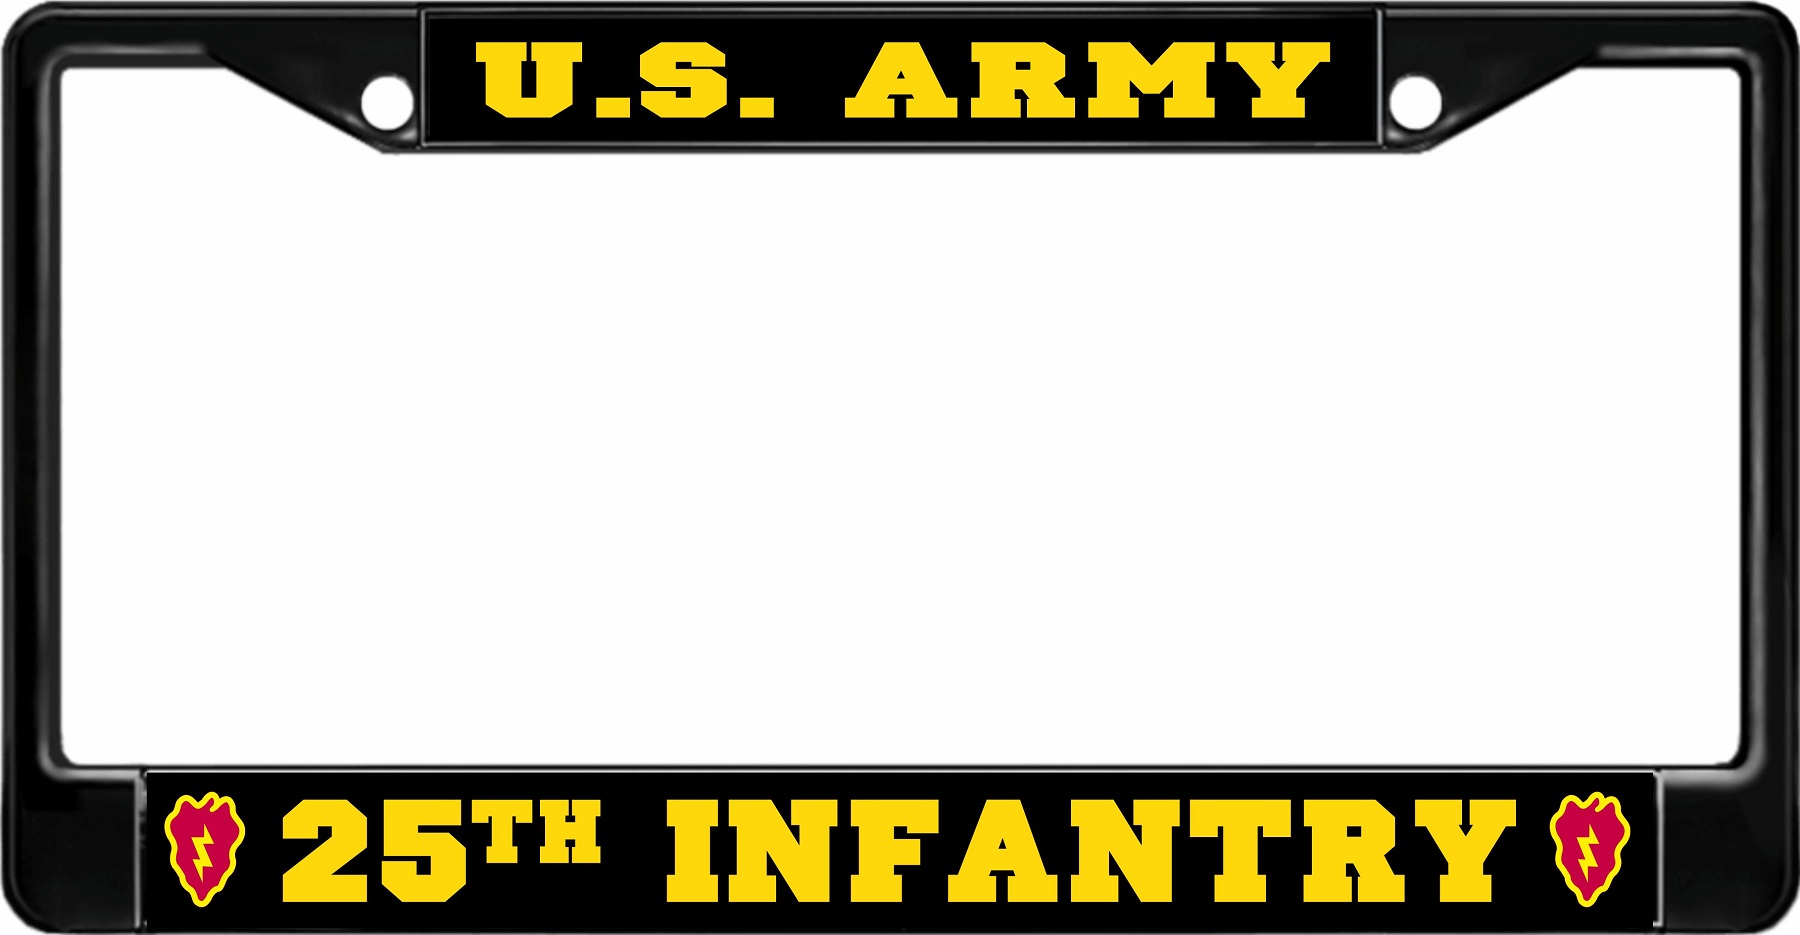 U.S. Army 25th Infantry Black License Plate FRAME